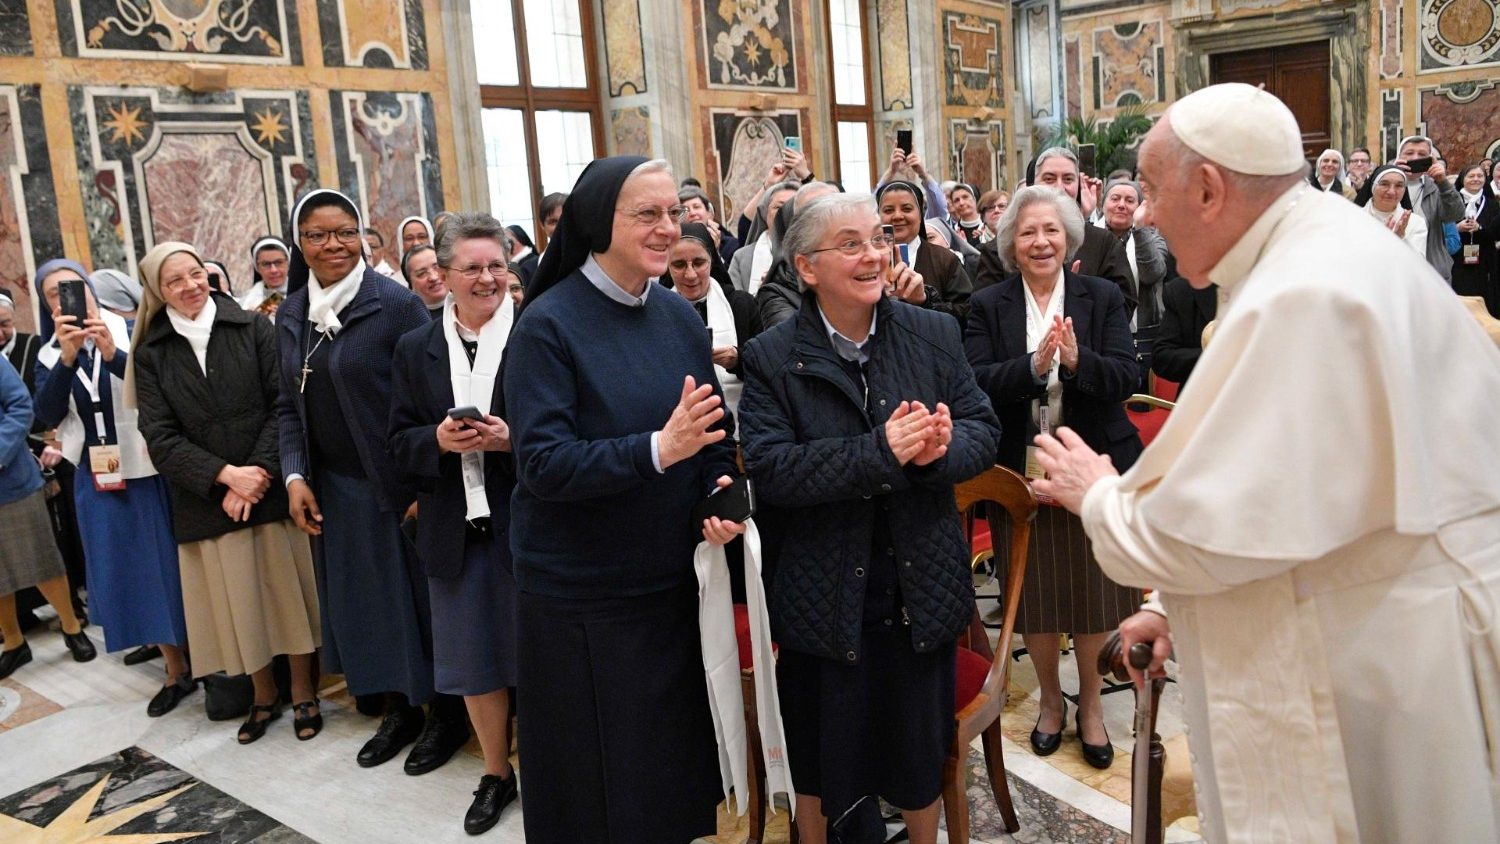 Папа – монахиням: будьте радостными свидетельницами Воскресшего (ФОТО)